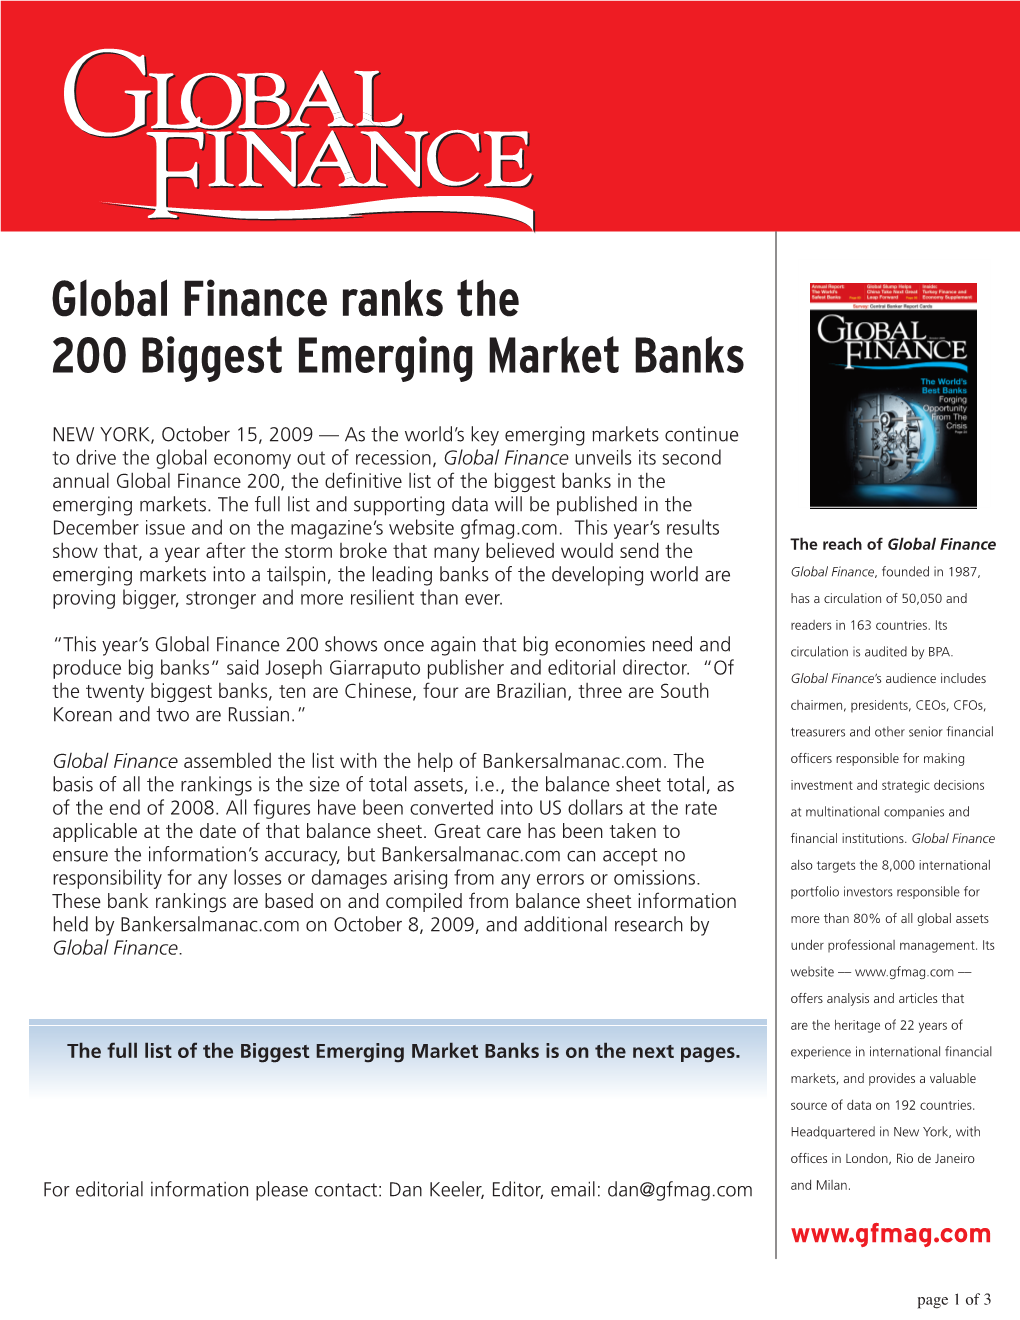 Global Finance Ranks the 200 Biggest Emerging Market Banks